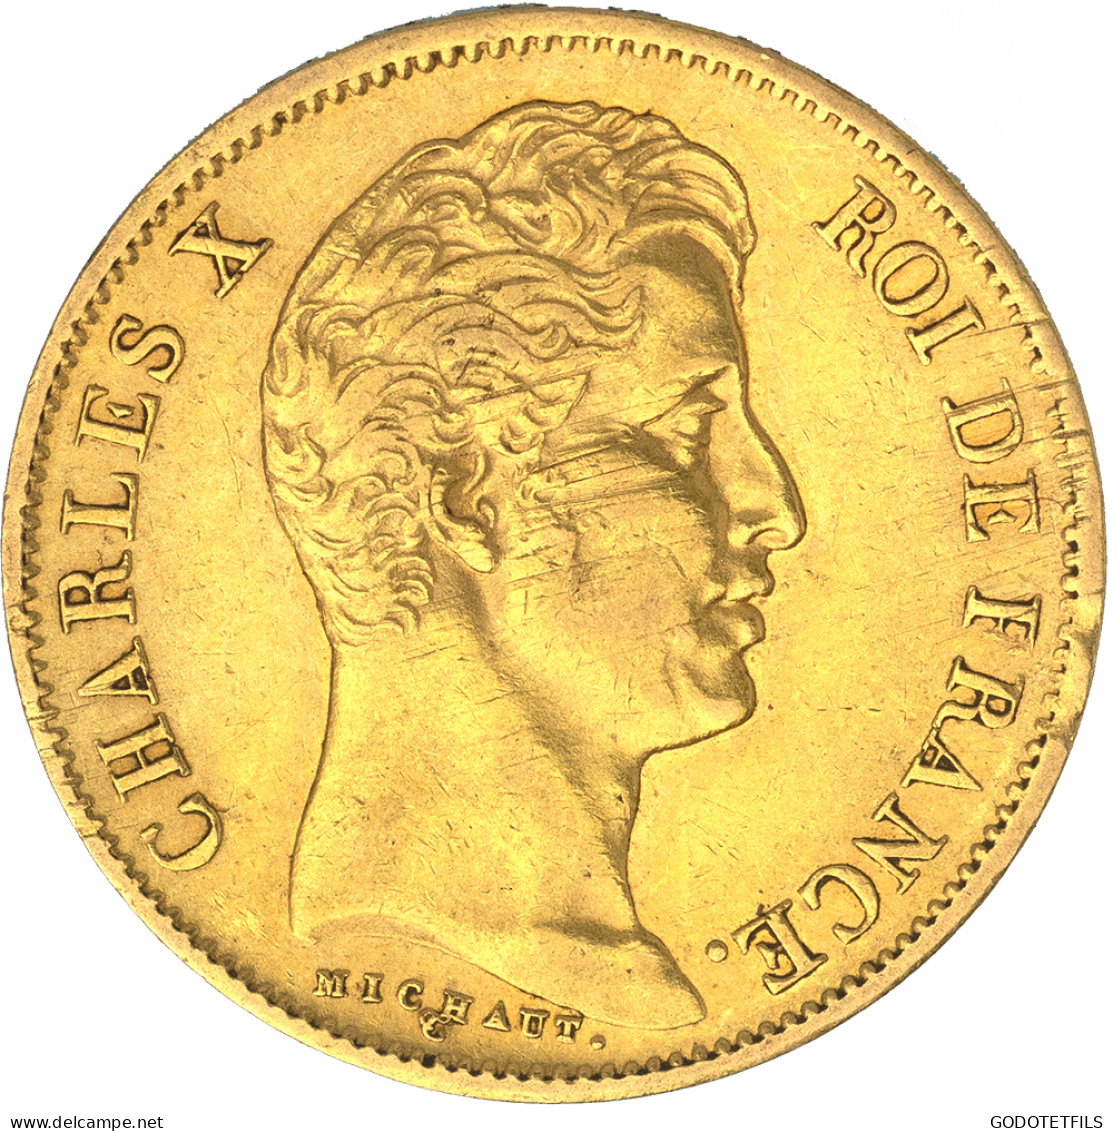 Charles X-40 Francs 1829 Paris - 40 Francs (gold)